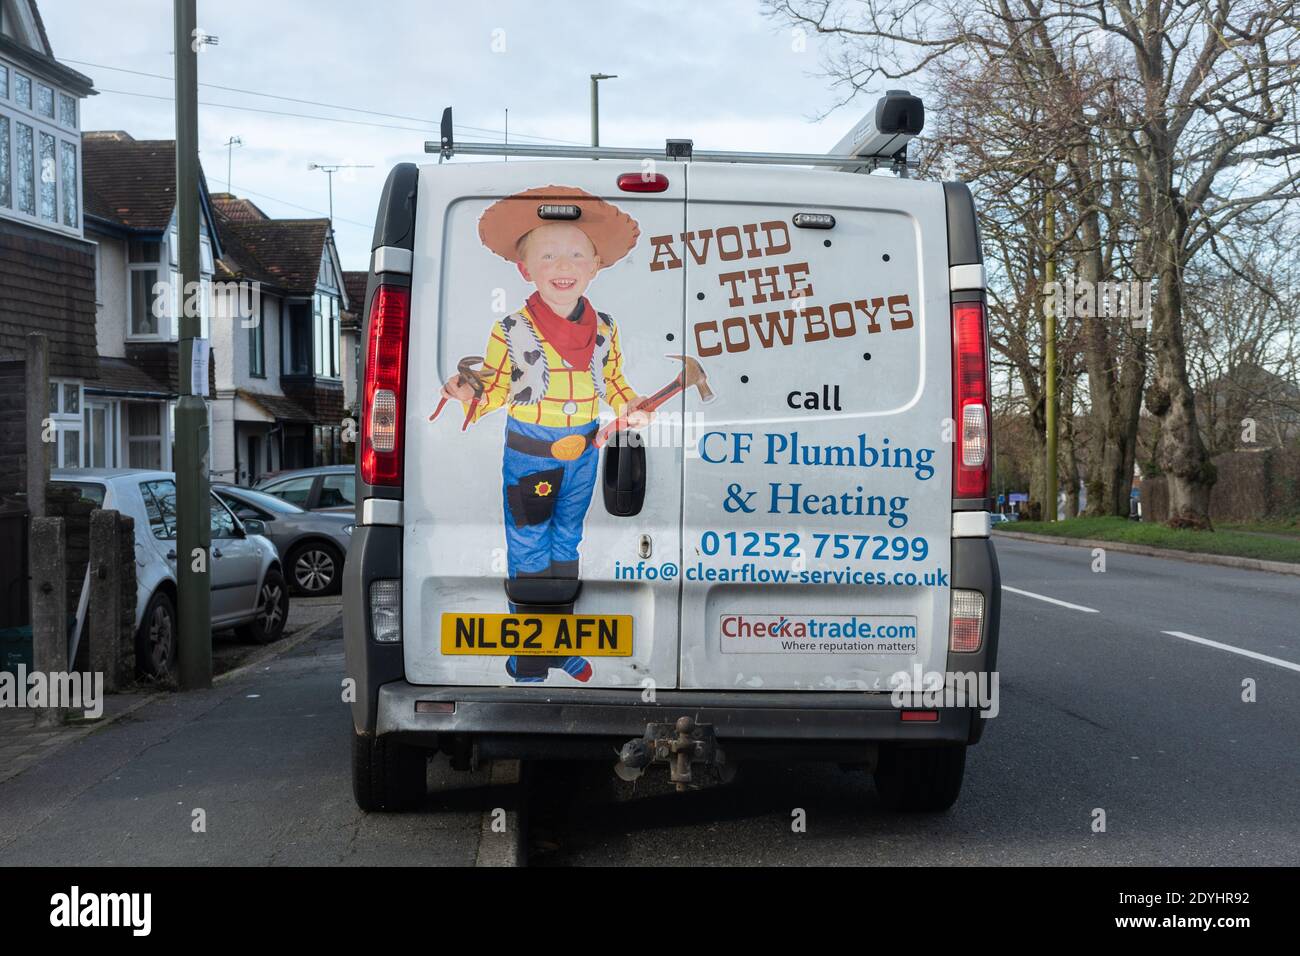 Weißer Klempner-Van mit Vermeiden der Cowboys auf der Rückseite gemalt, bezieht sich auf Cowboy-Bauherren und Handwerker. Stockfoto